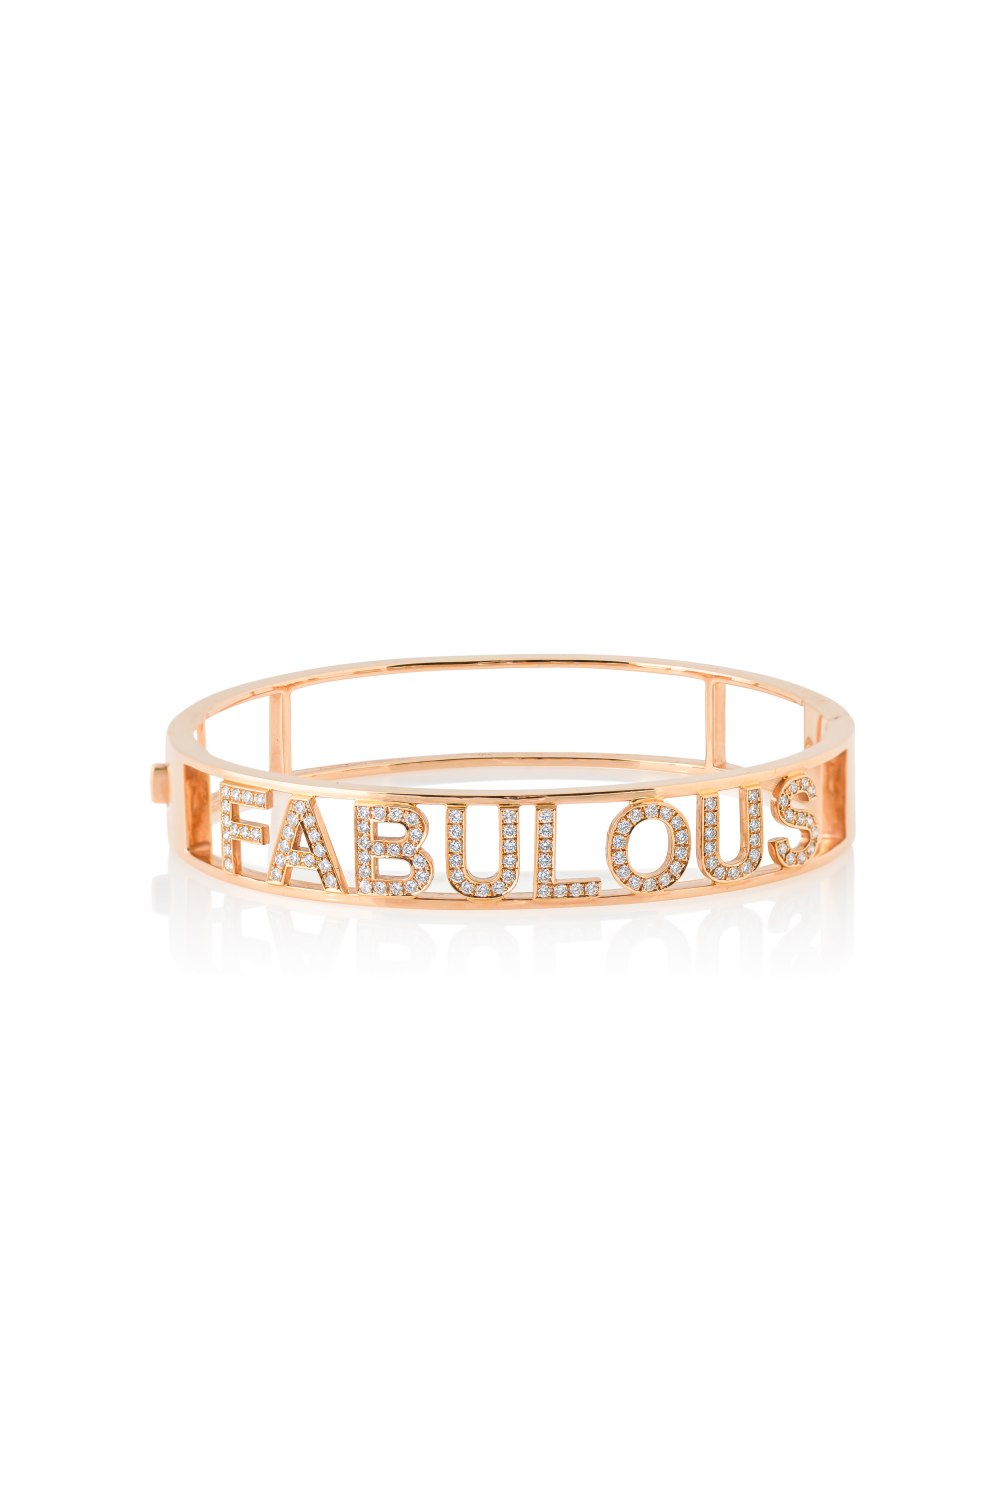 Kessaris-Fabulous Diamond Bangle Bracelet